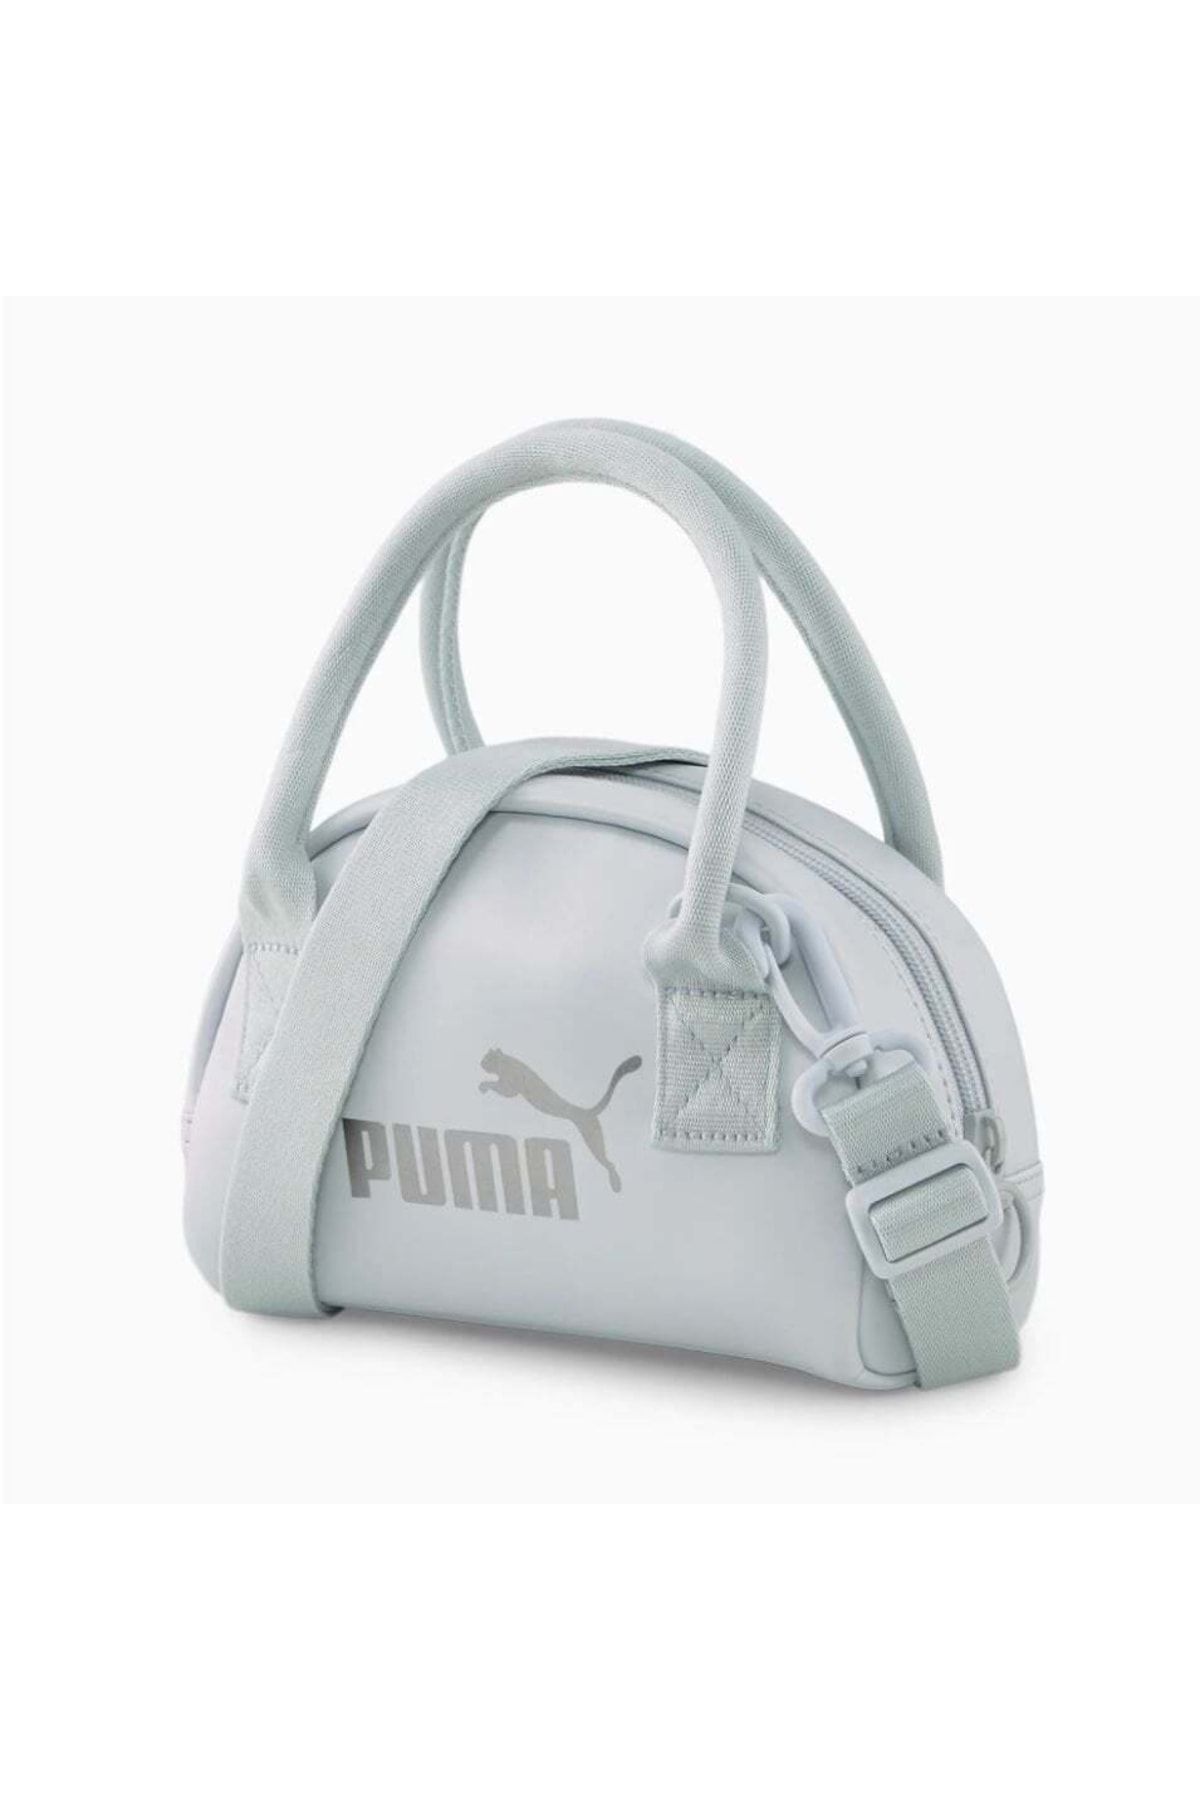 Puma Core Up Mini Grip Bag Kadın Omuz Askılı Çanta-07947902